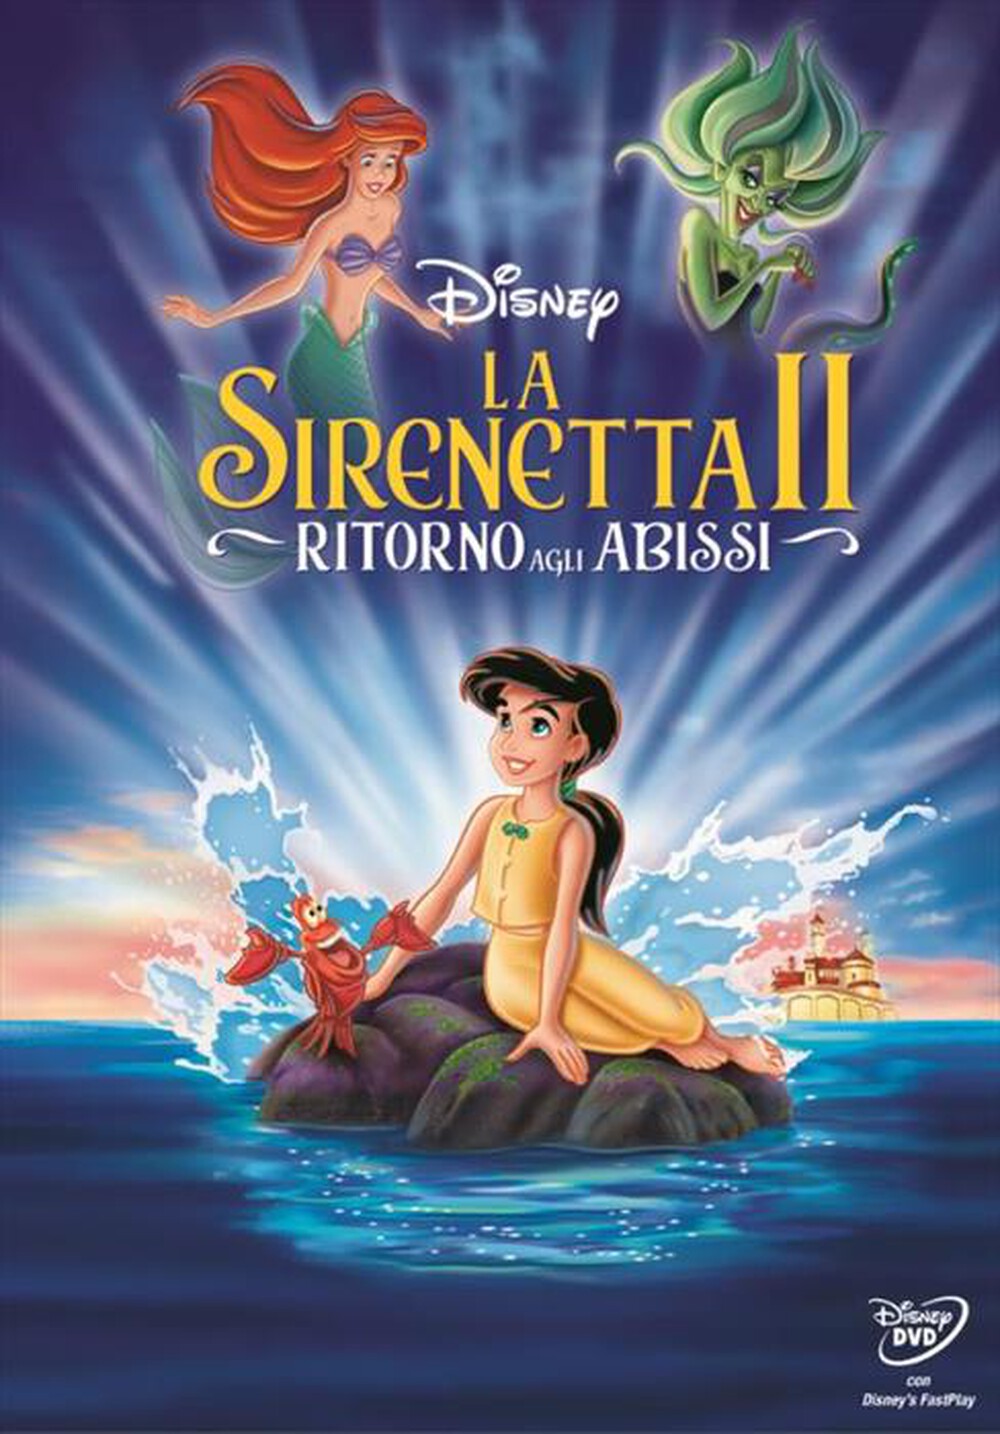 "WALT DISNEY - Sirenetta 2 (La) - Ritorno Agli Abissi - "